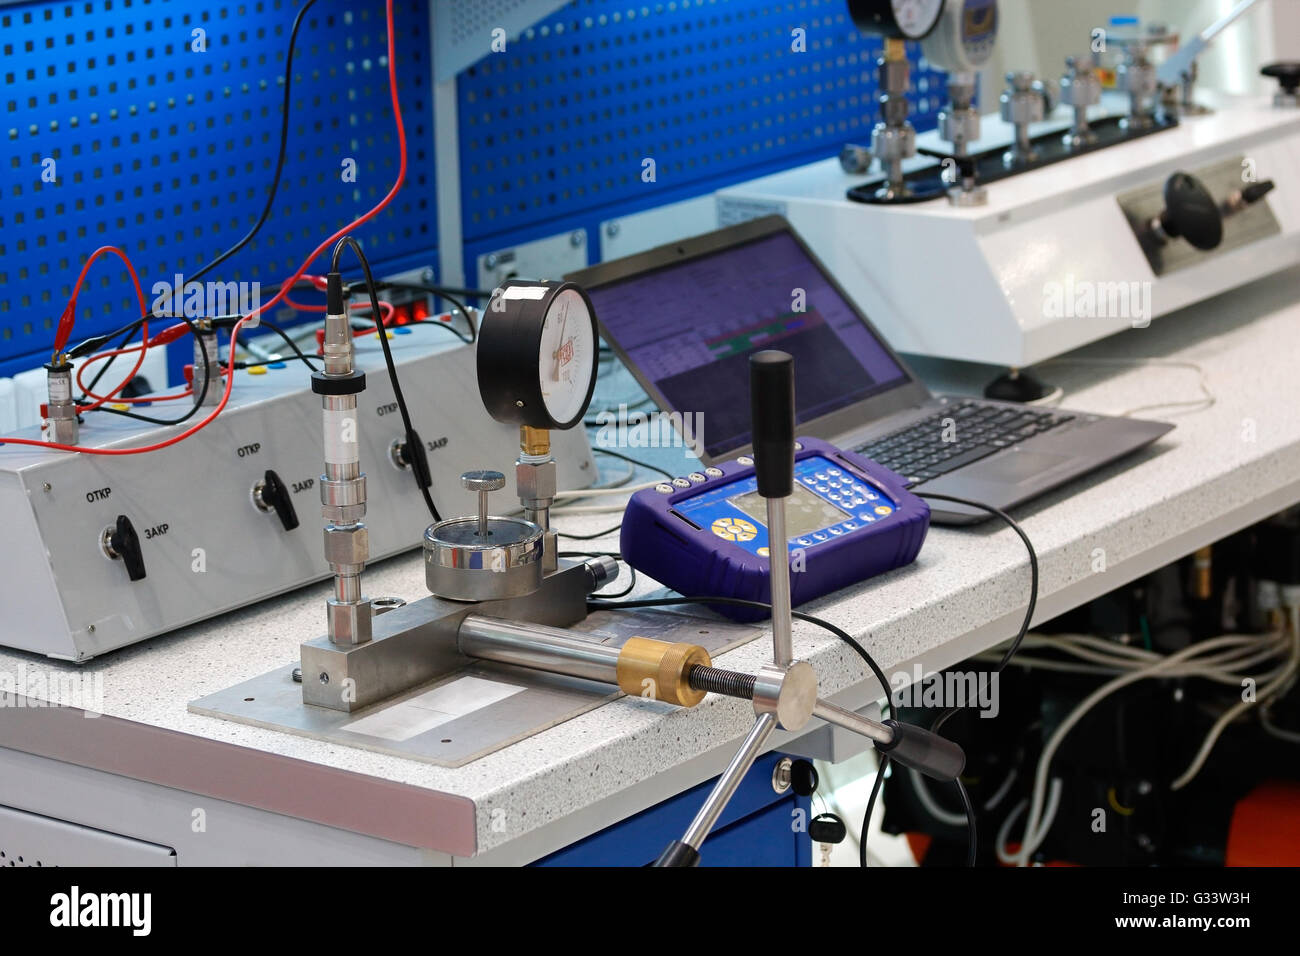 La technologie de mesure et de contrôle laboratoire équipé de divers instruments et systèmes. Banque D'Images